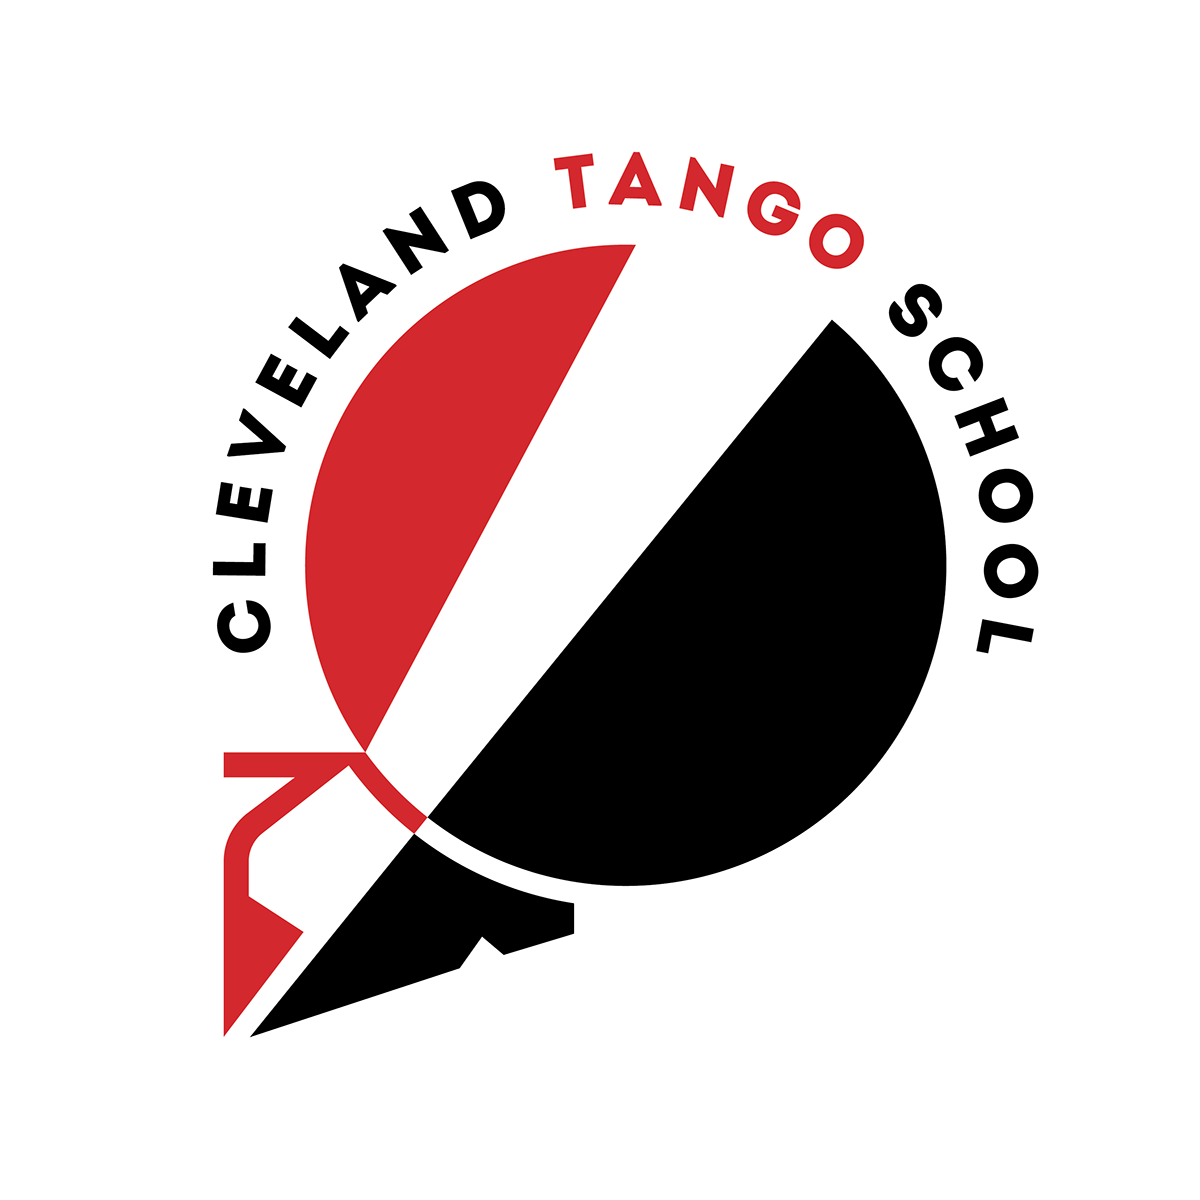 tango Cleveland DANCE   Cleveland Tango School clé thisisCLE culture dance community